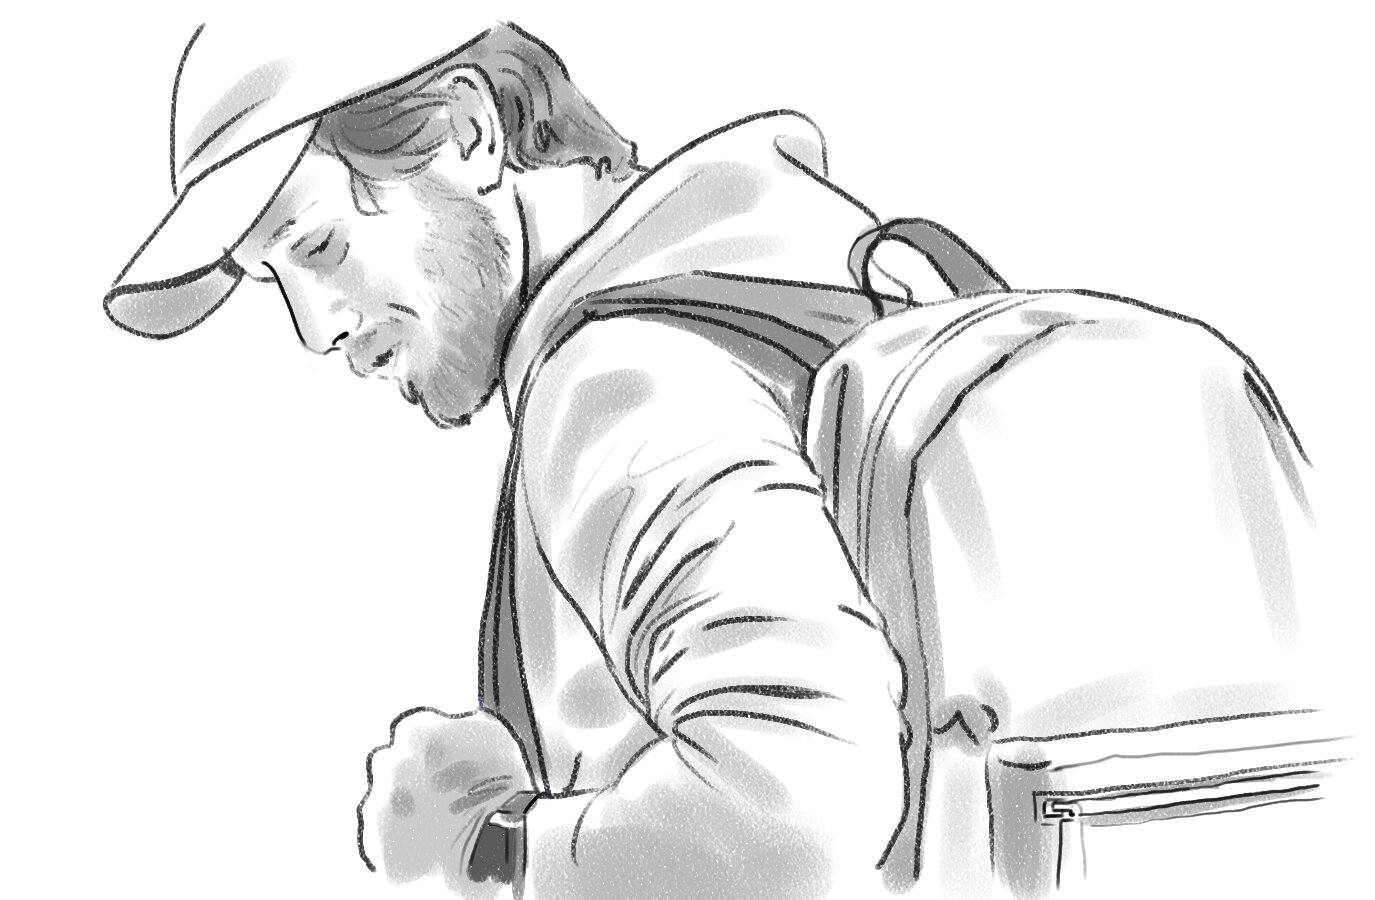 guy&backpack.jpg